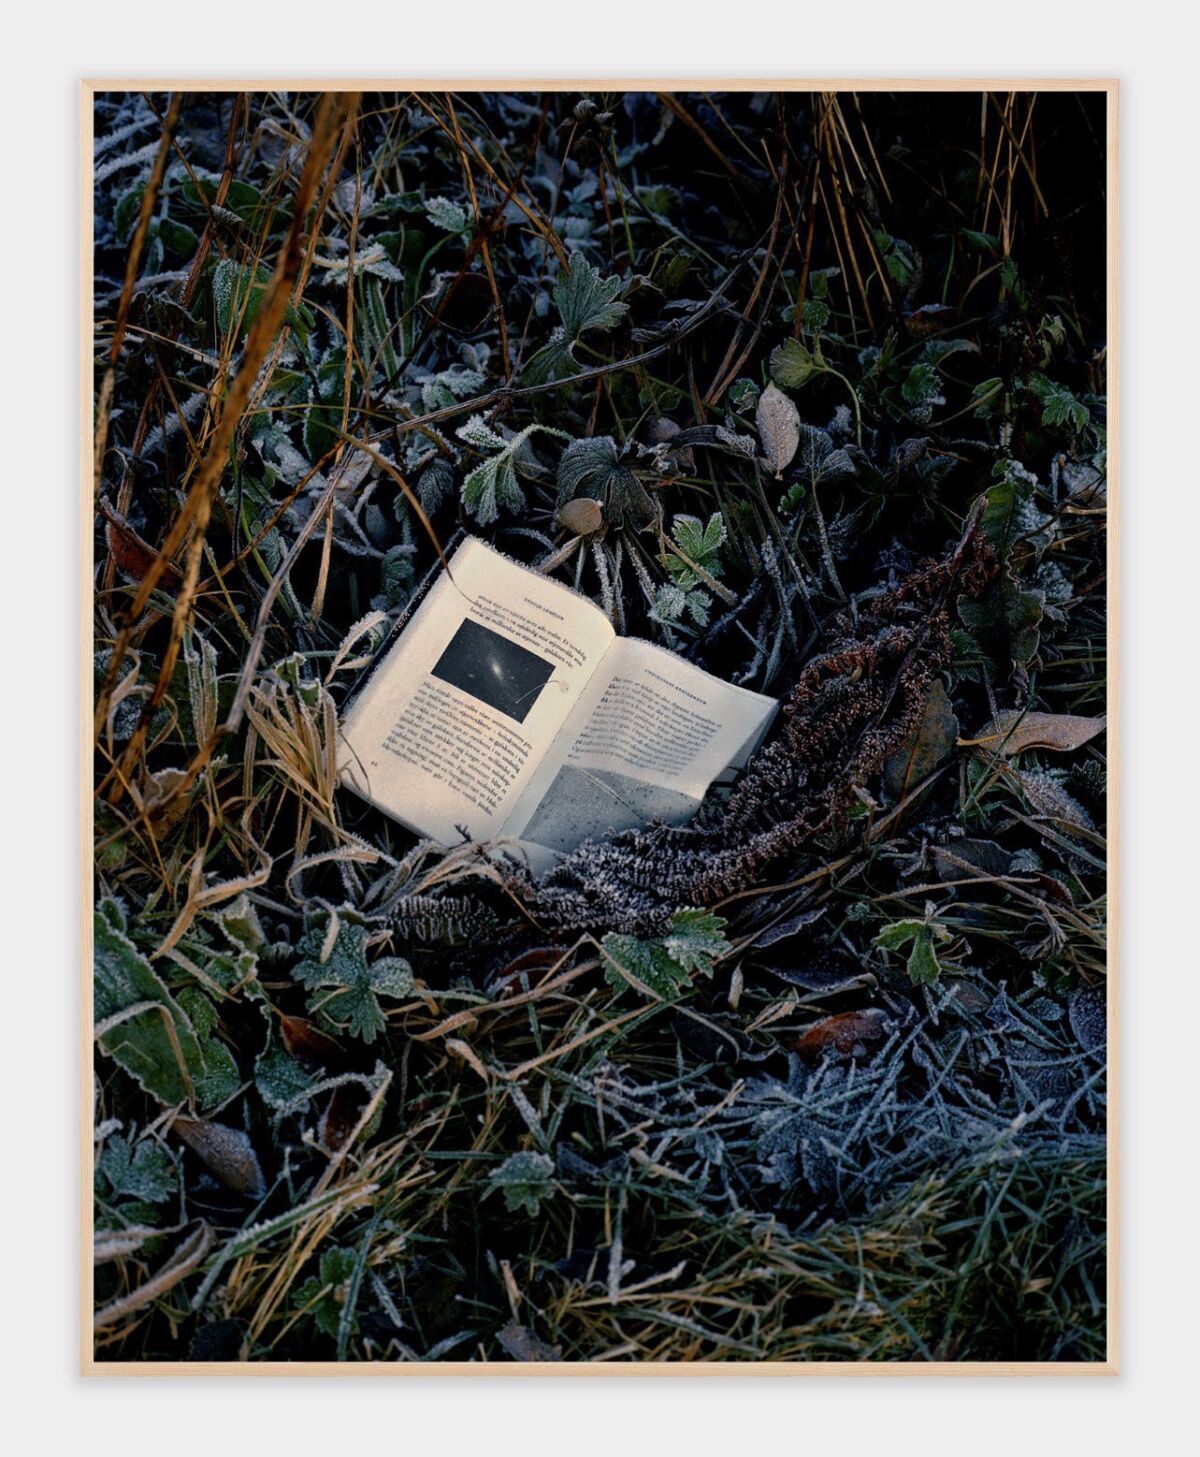 En bok ligger oppslått i strågress dekket av frost og rim.